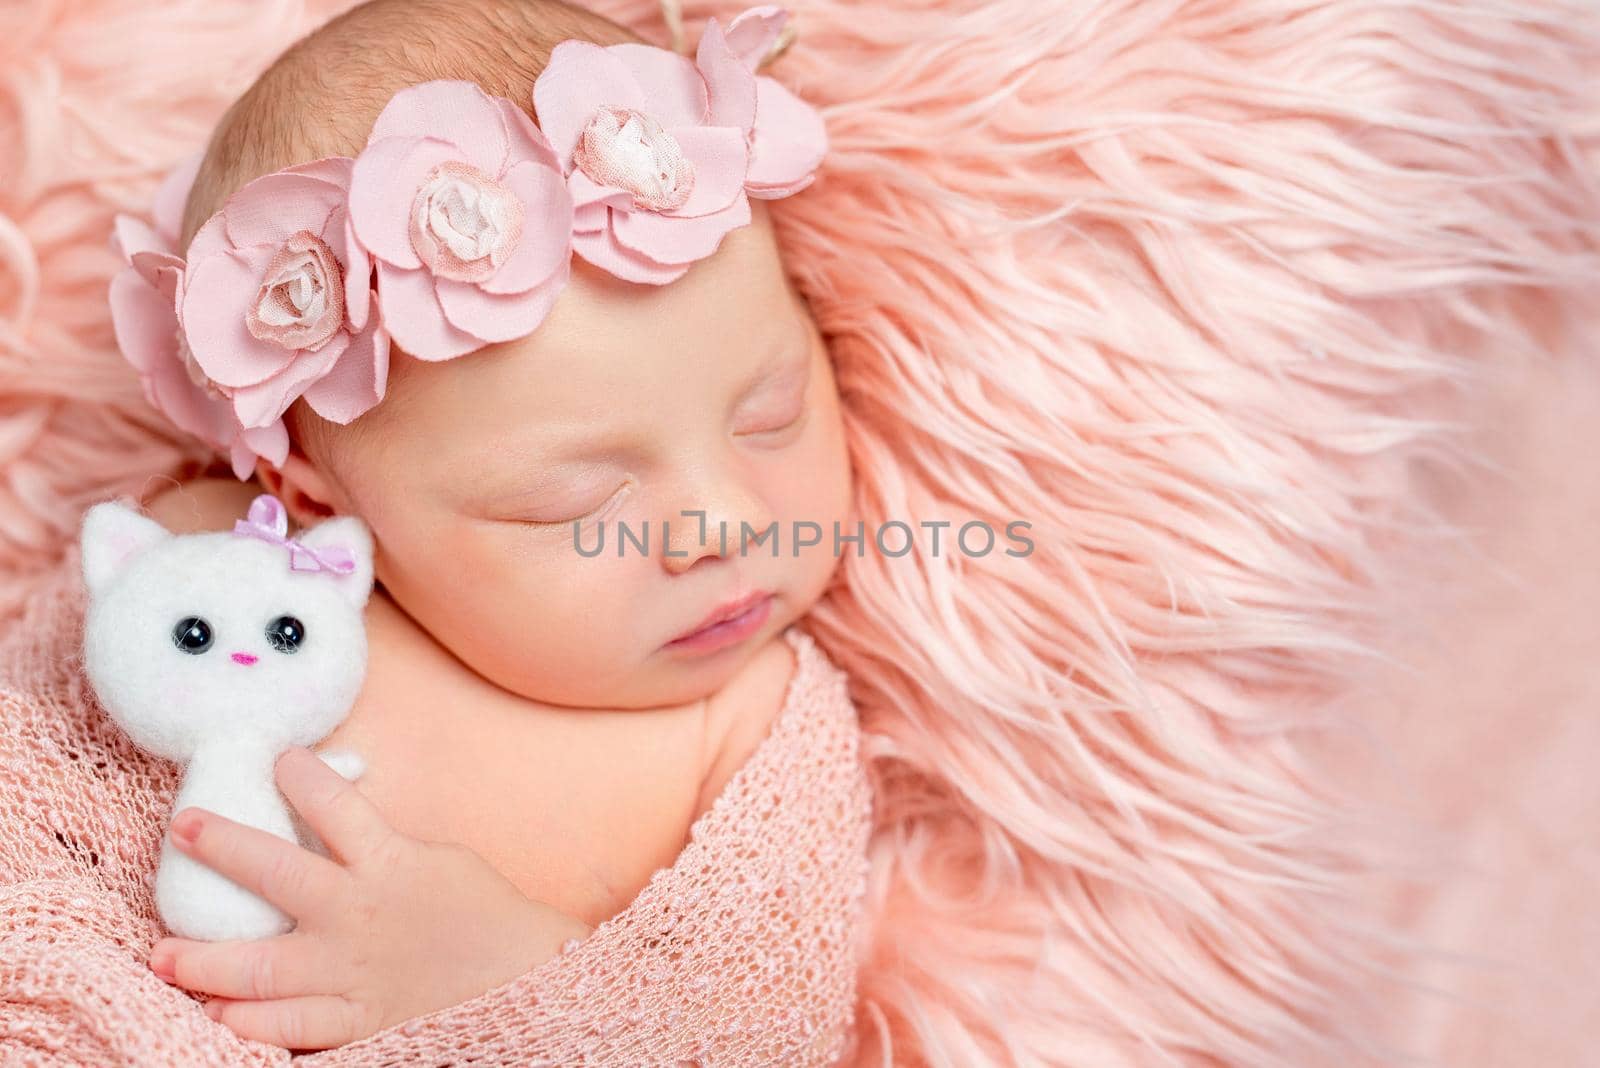 lovely newborn girl holding toy on pink fluffy blanket by tan4ikk1